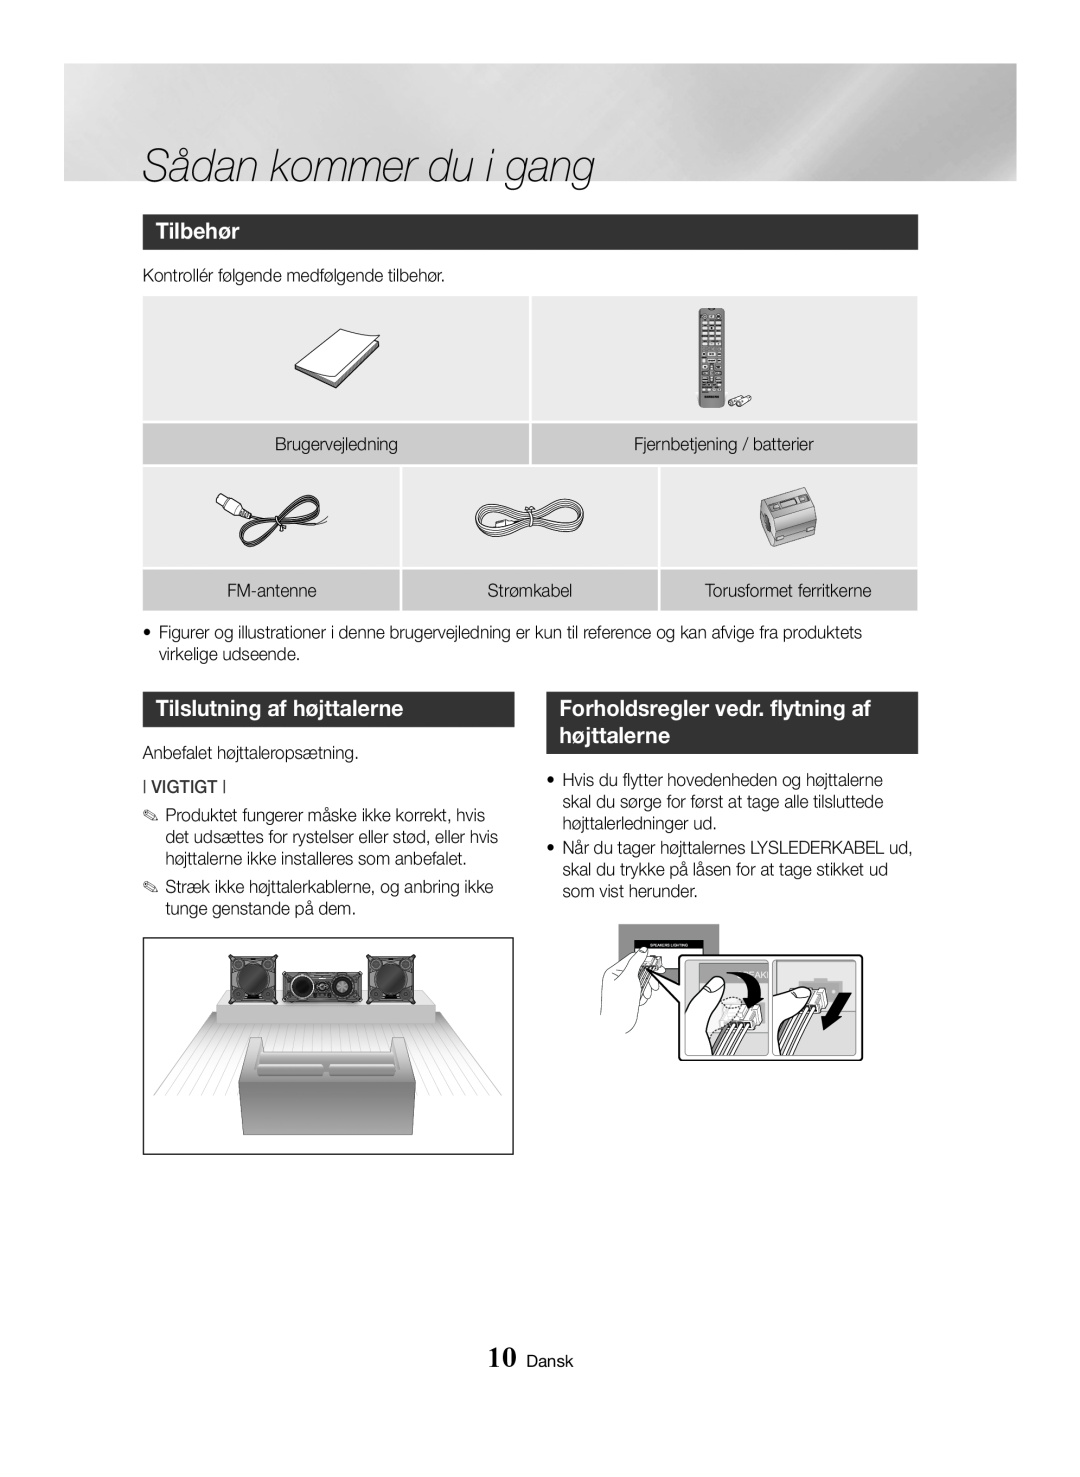 Samsung MX-HS8000/EN manual Tilbehør, Tilslutning af højttalerne, Forholdsregler vedr. flytning af højttalerne, Vigtigt 